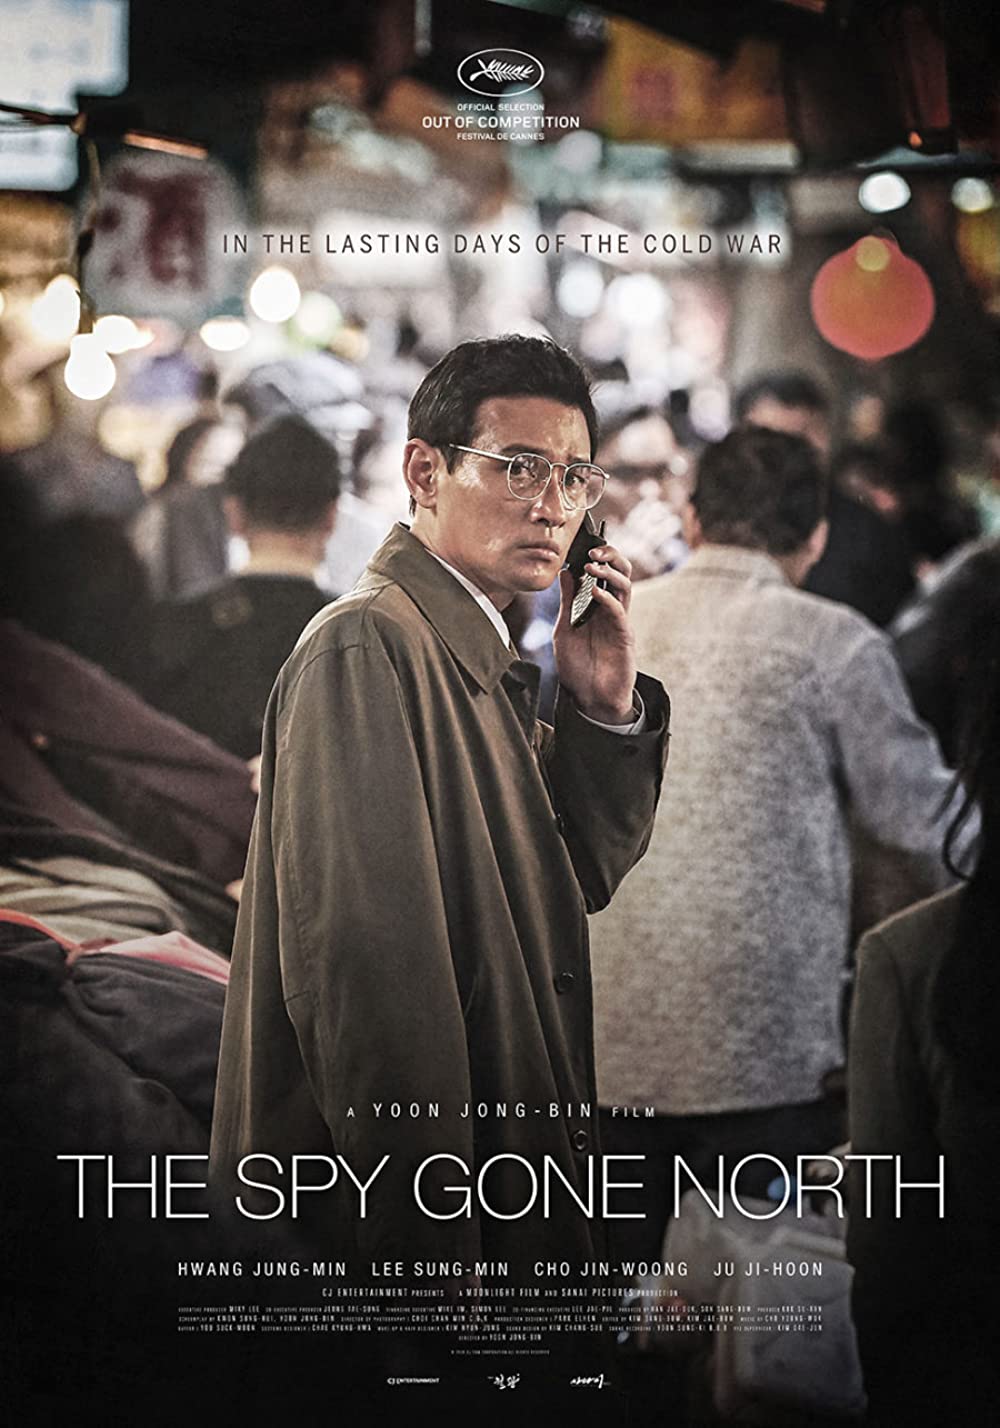 7 Film Korea bertema konspirasi politik, penuh intrik dan teka-teki